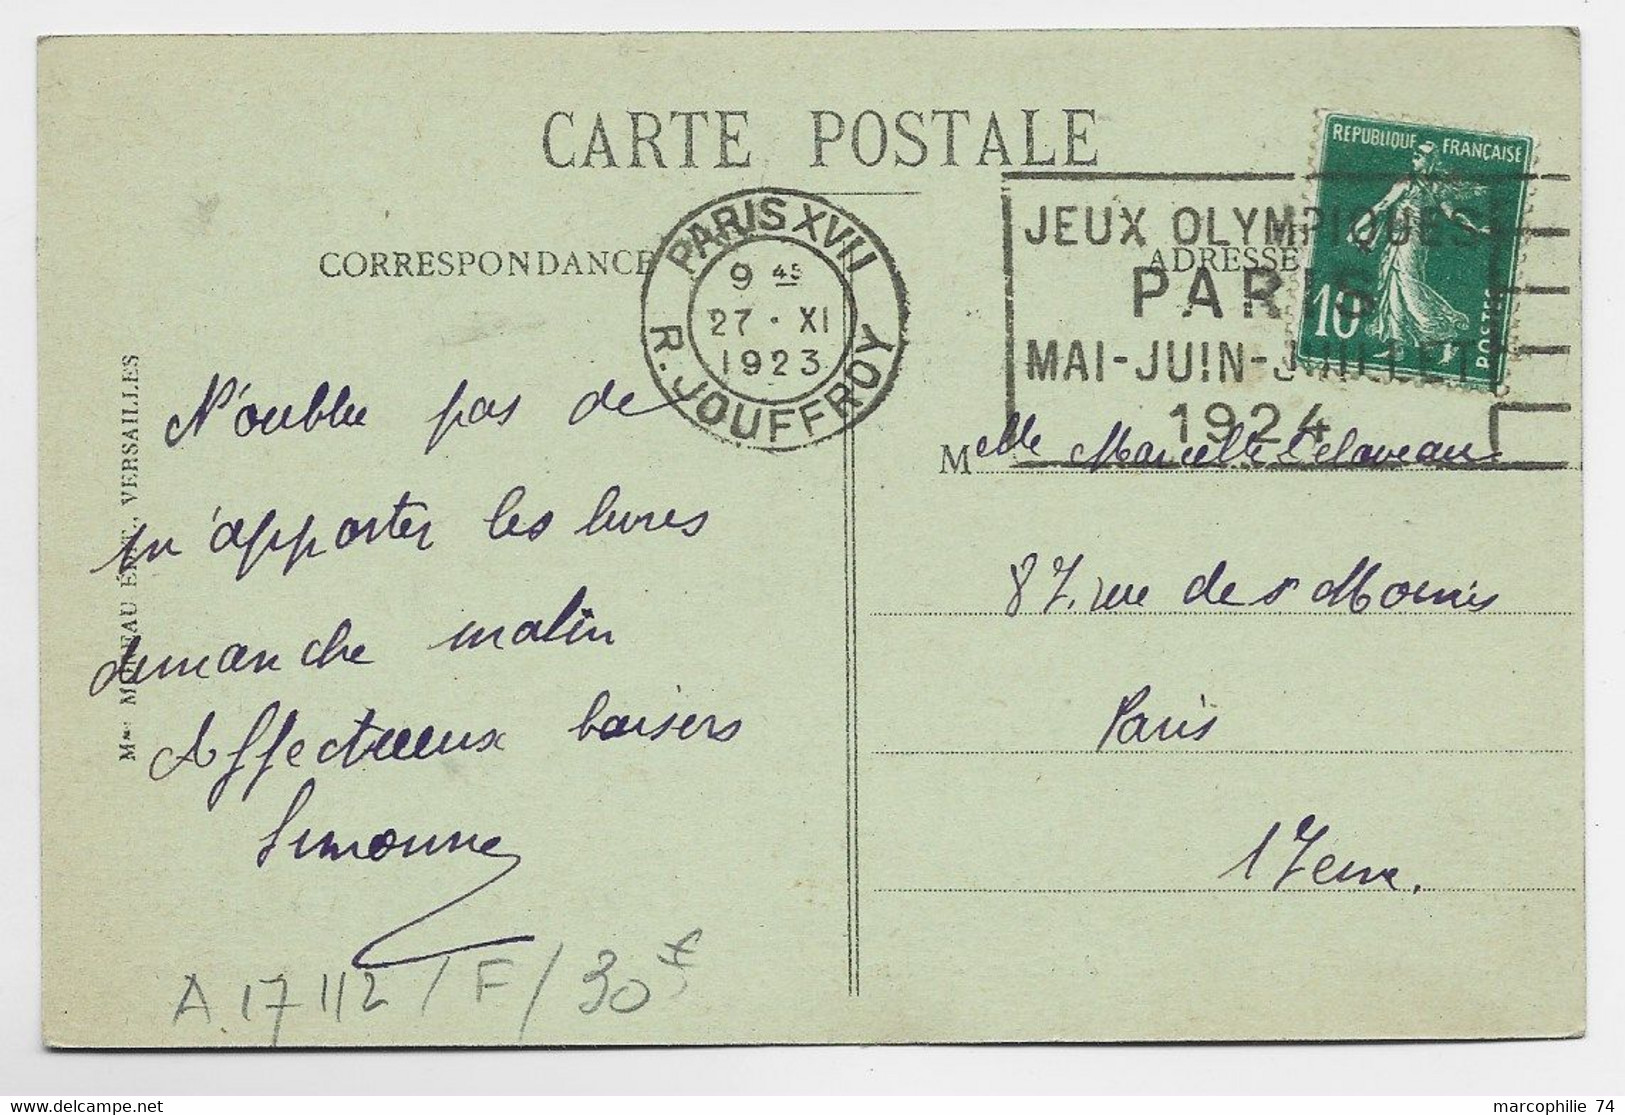 FRANCE SEMEUSE 10C CARTE MEC FLIER JEUX OLYMPIQUES PARIS R JOUFFROY 27.XI.1923 COTE 30€ - Verano 1924: Paris